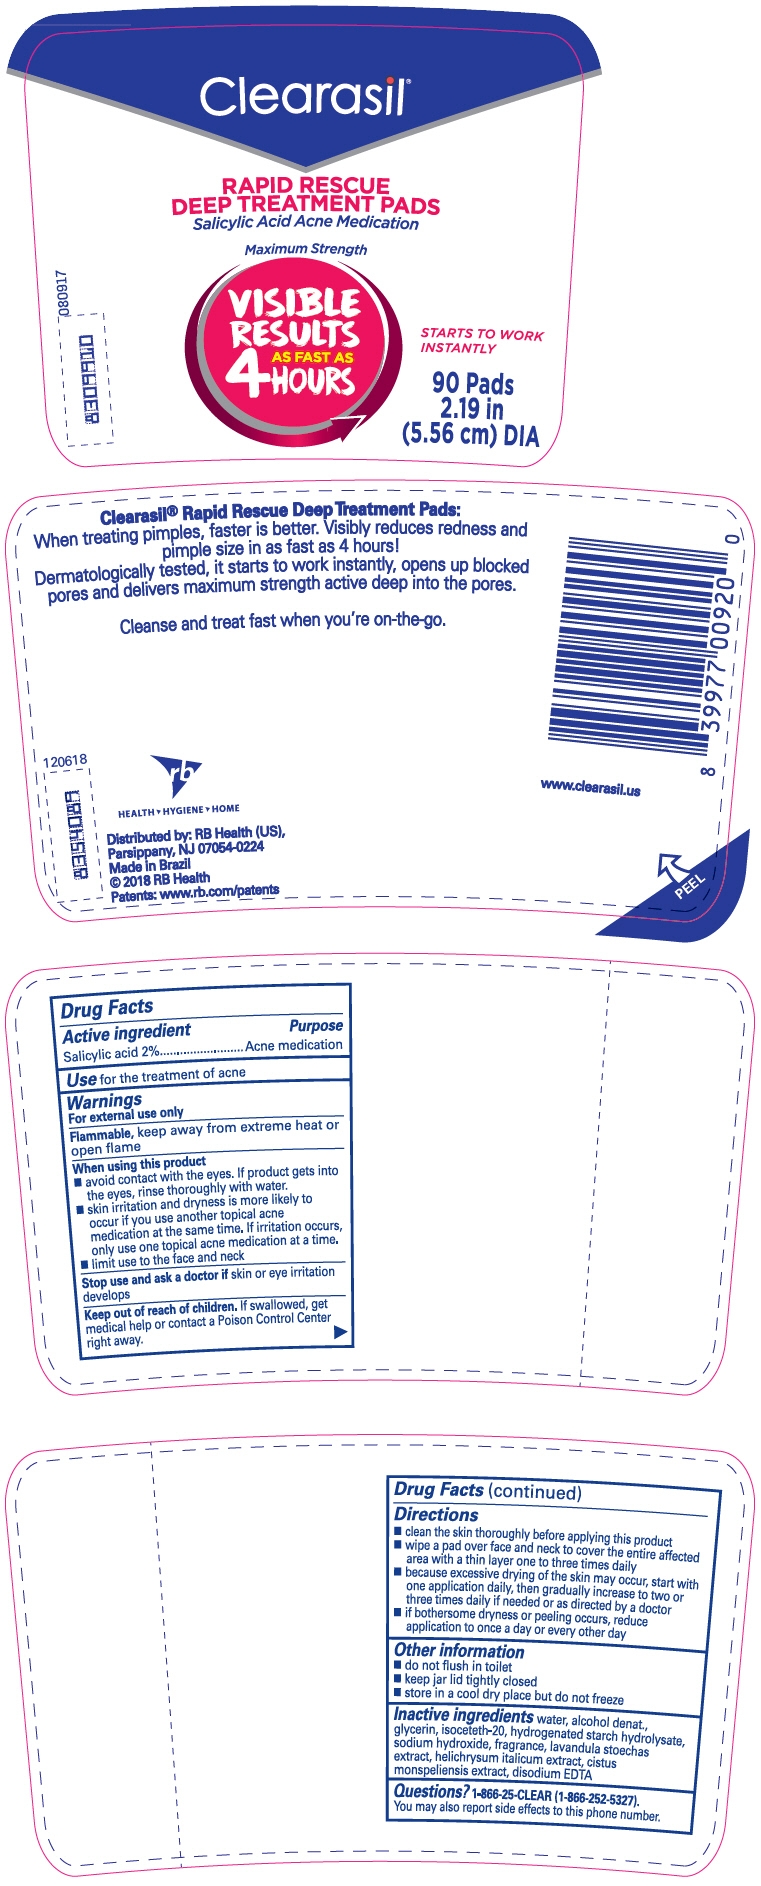 PRINCIPAL DISPLAY PANEL - 90 Pad Jar Label